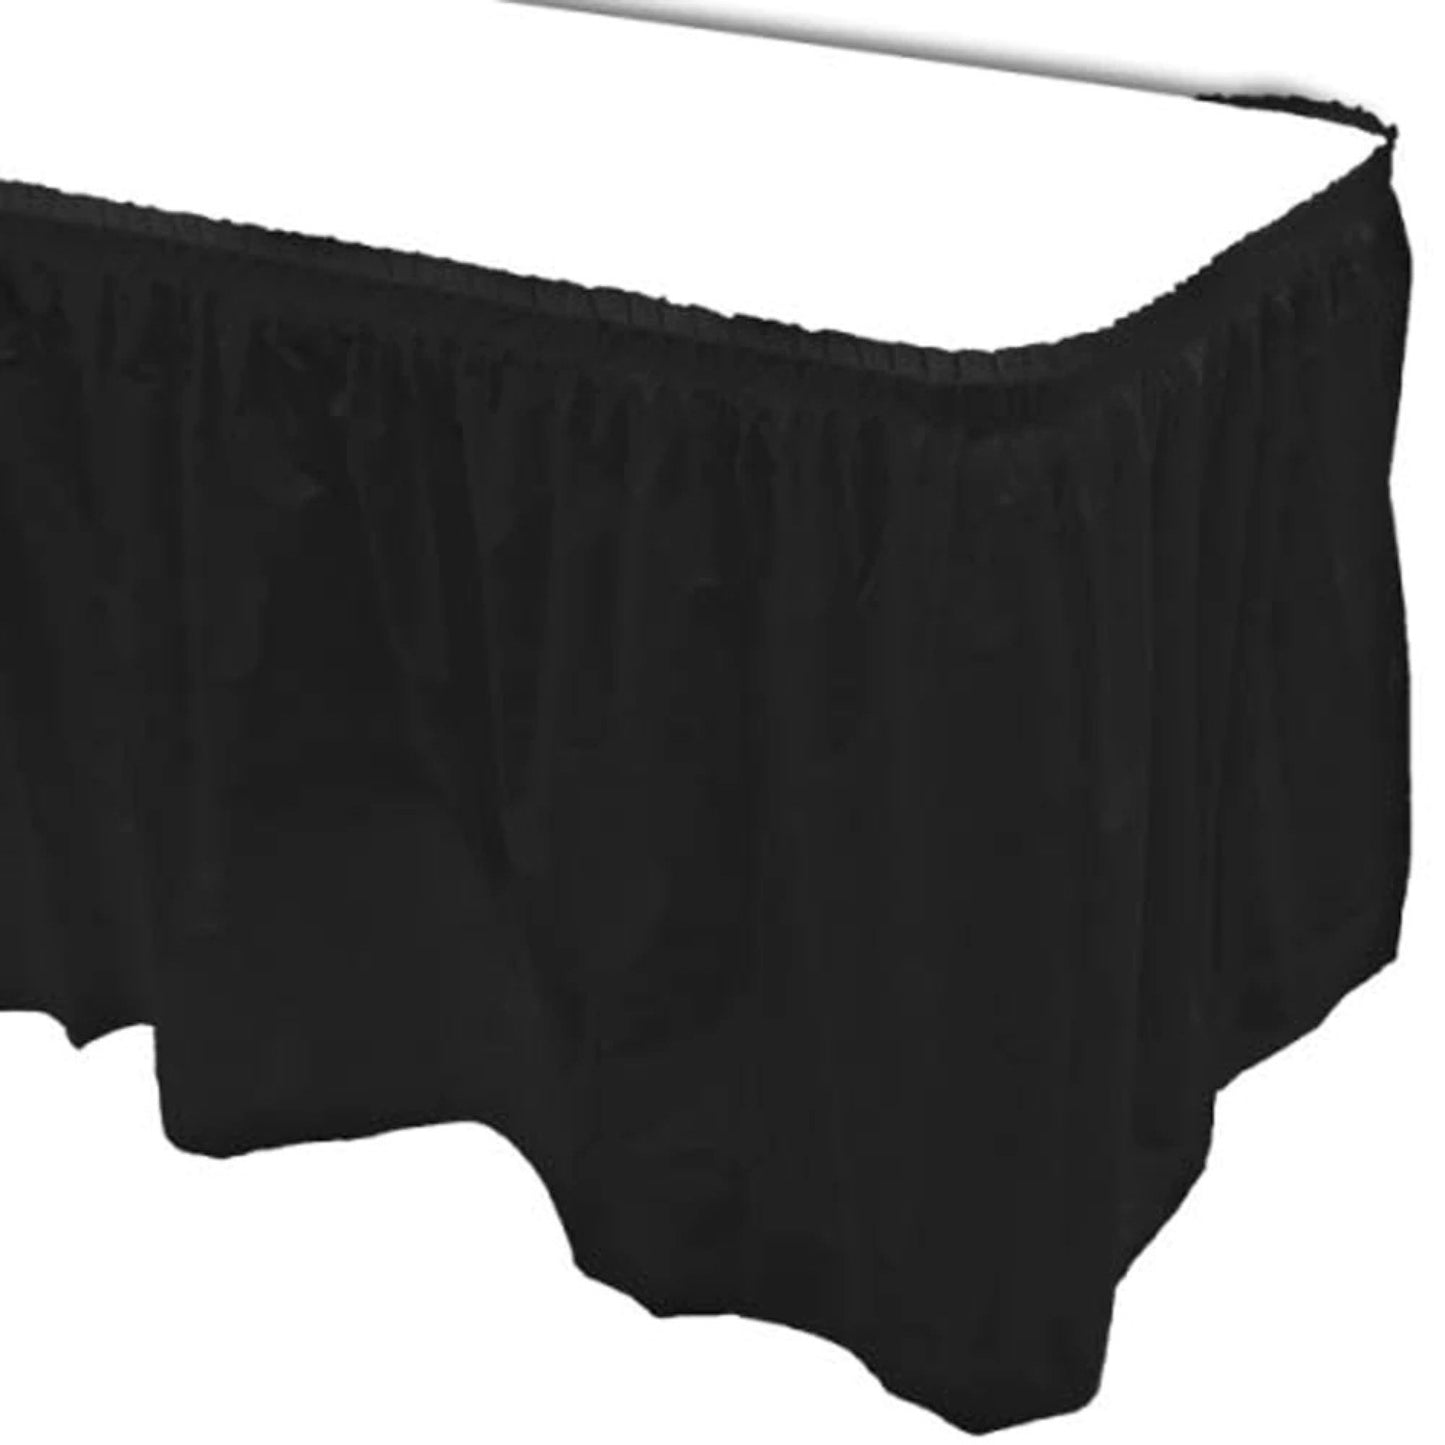 Rectangular Table Skirt Jet Black 36 x 74 cm Pack of 1